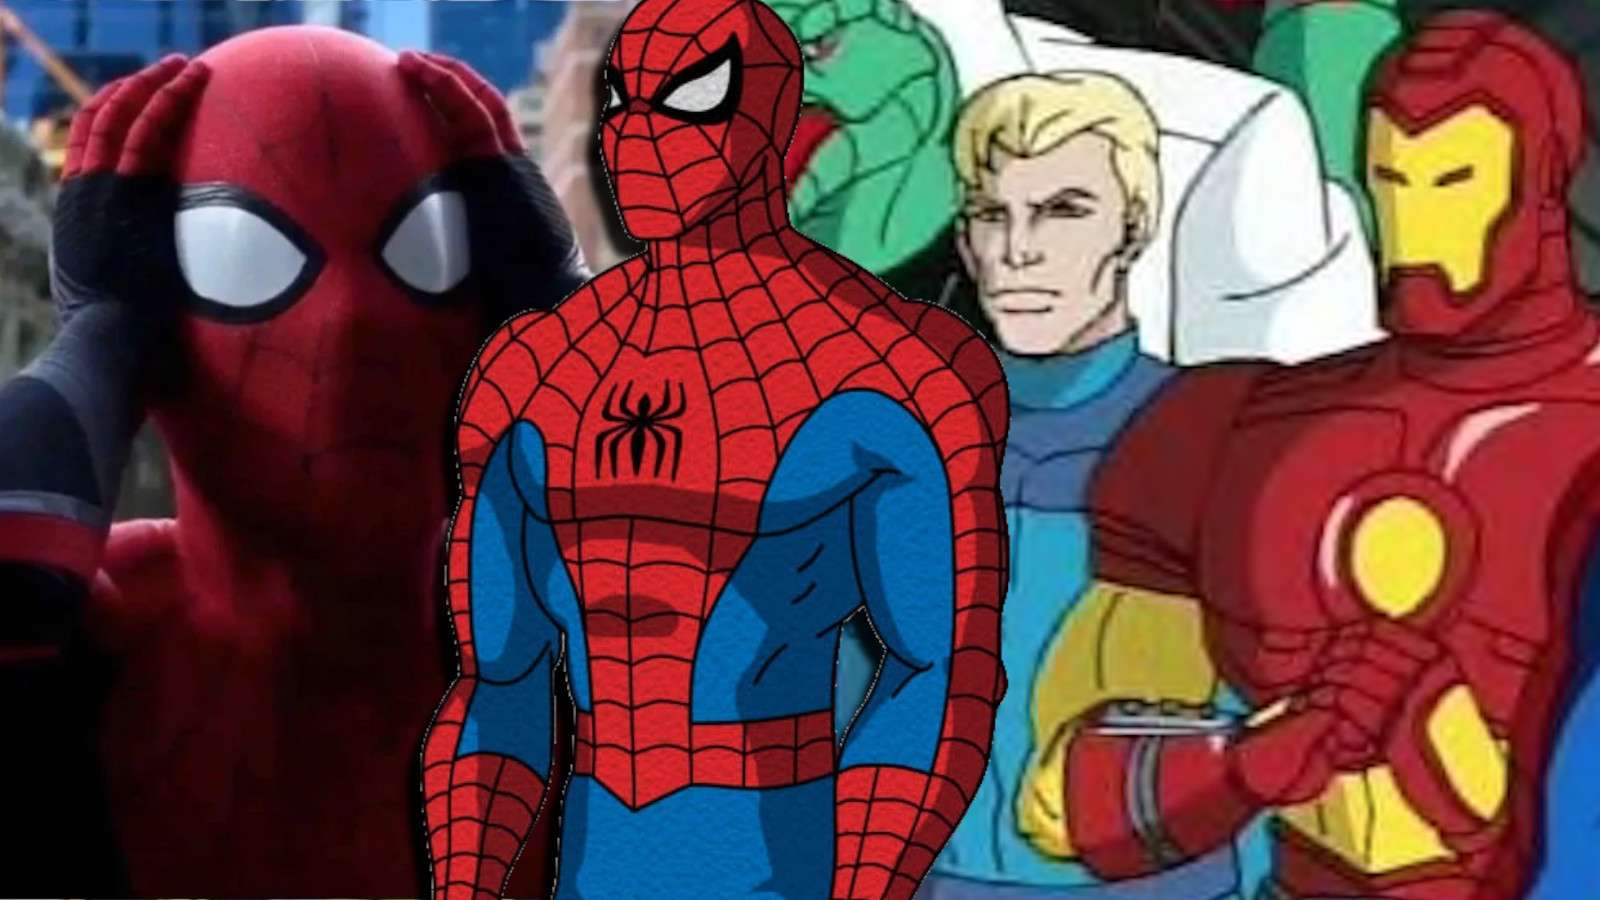 Spider-Man and Secret Wars collage